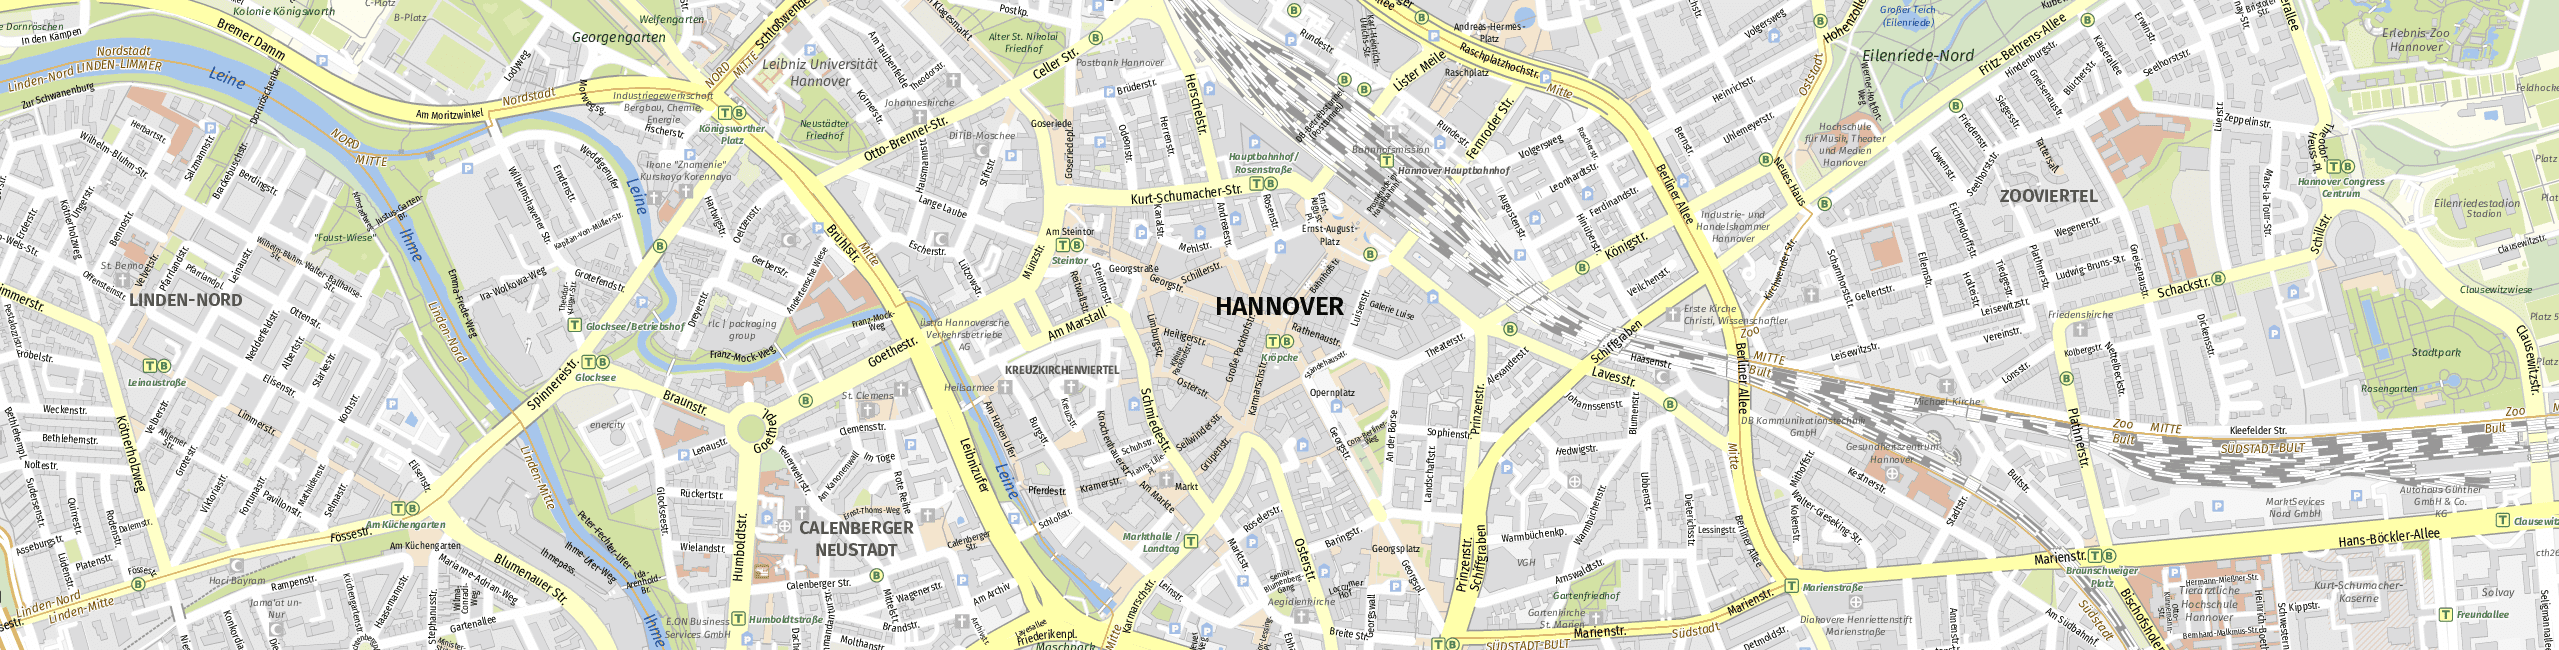 Stadtplan Hannover zum Downloaden.